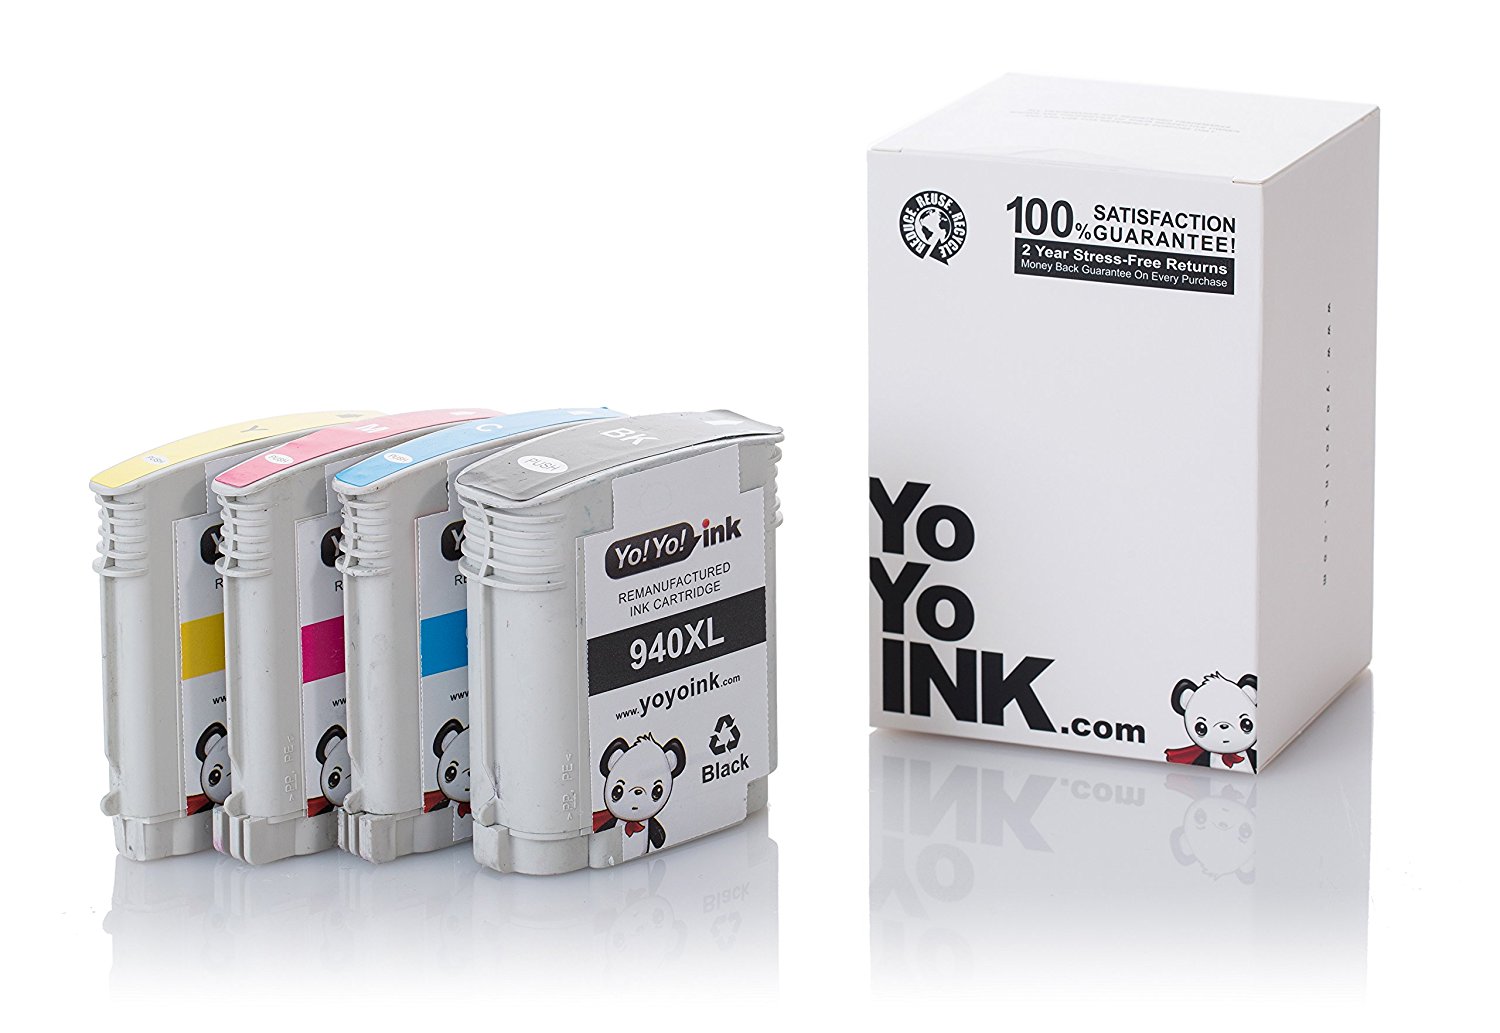 HP 940XL Printer Remanufactured Ink Cartridges: 1 Black, 1 Cyan, 1 Magenta, 1 Yellow (4 Pack)